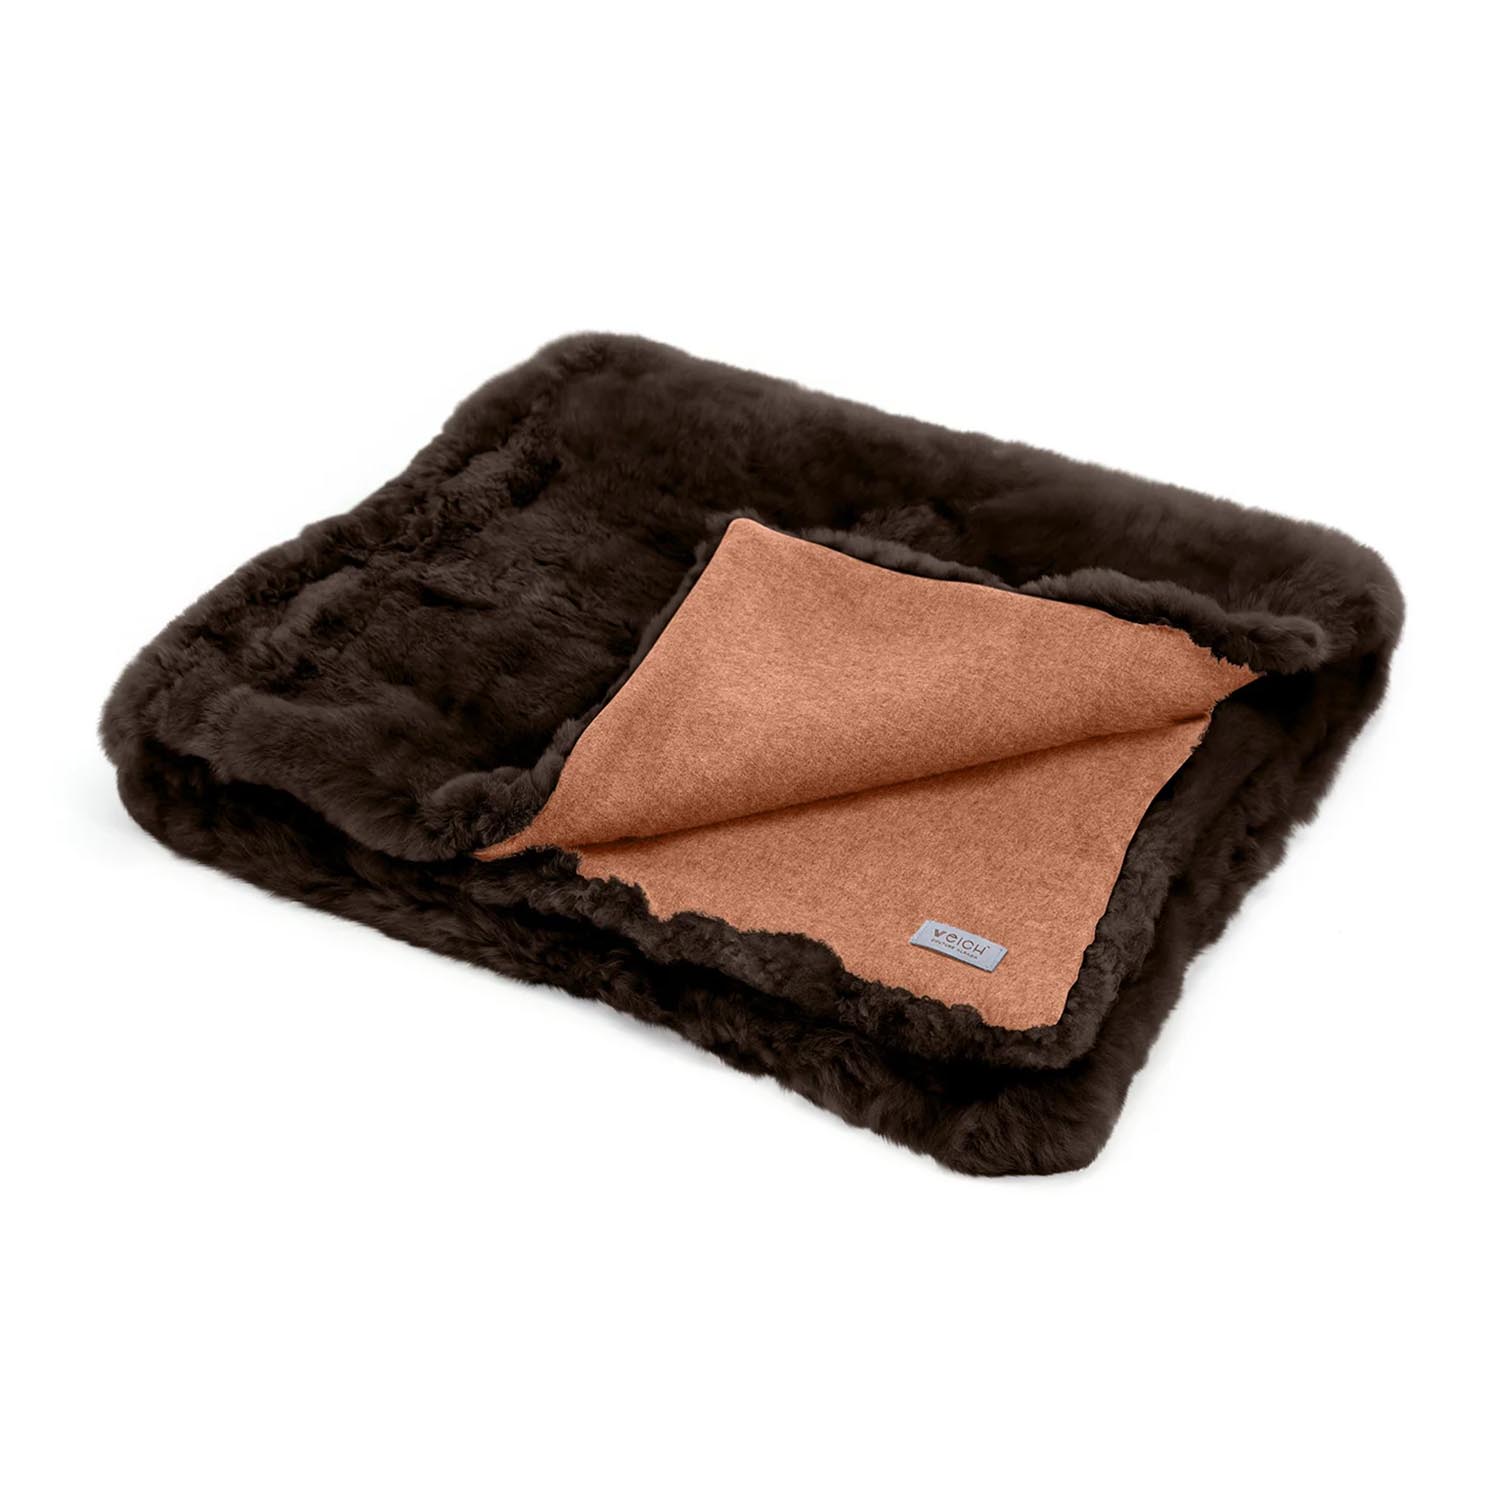 Überwurfdecke Luis, Grösse b. 130 x l. 220 cm, Farbe dark chocolate, Rückseite brown von Weich Couture Alpaca